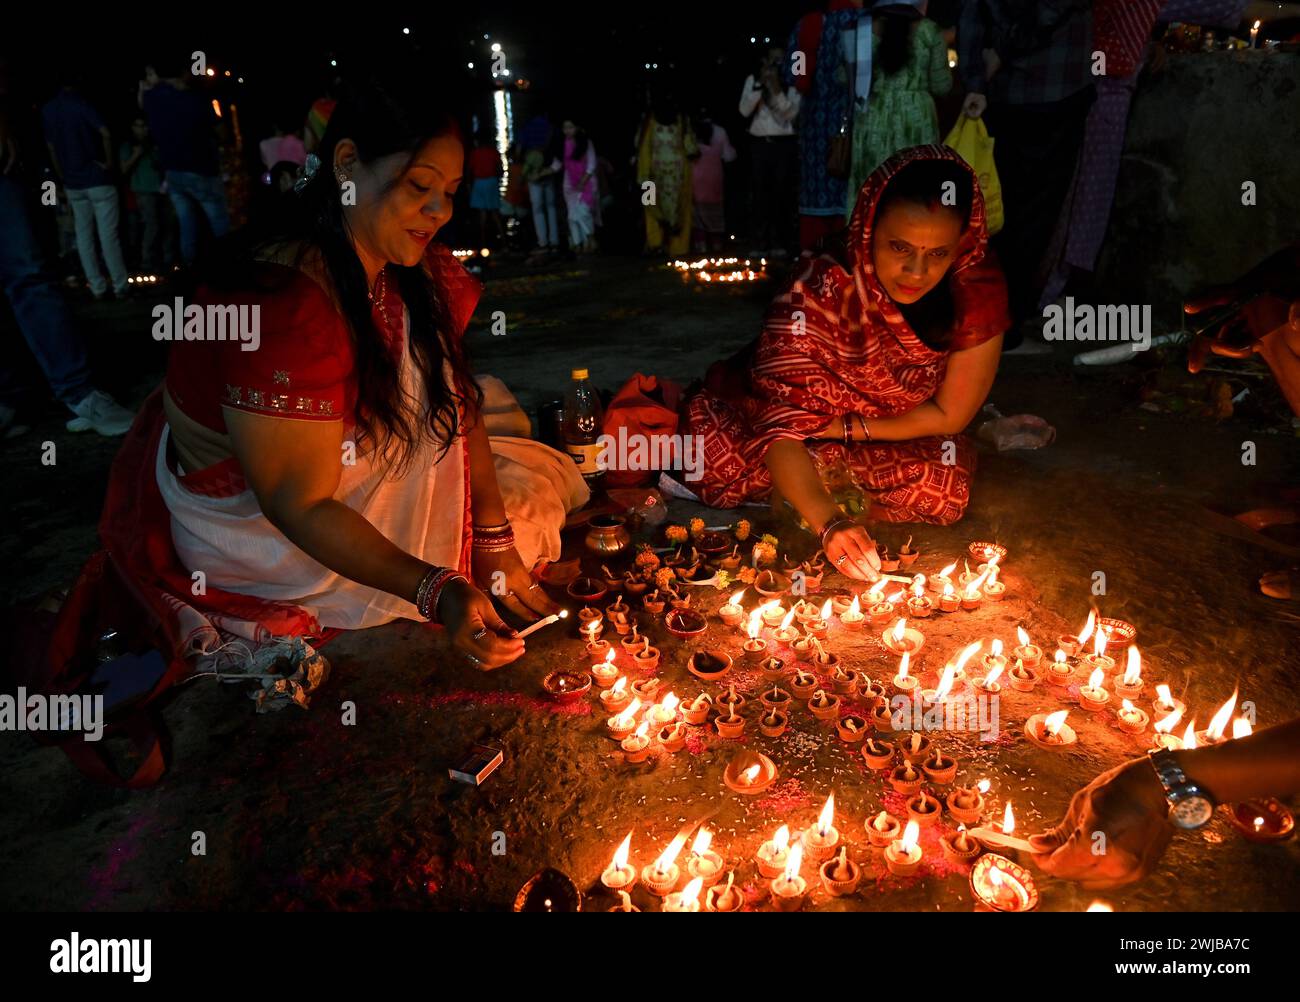 Indische Frauen, die Abendgebete mit einer schwimmenden Lehmlampe am Ufer des Ganges in Kalkutta, Indien, durchführen. Stockfoto